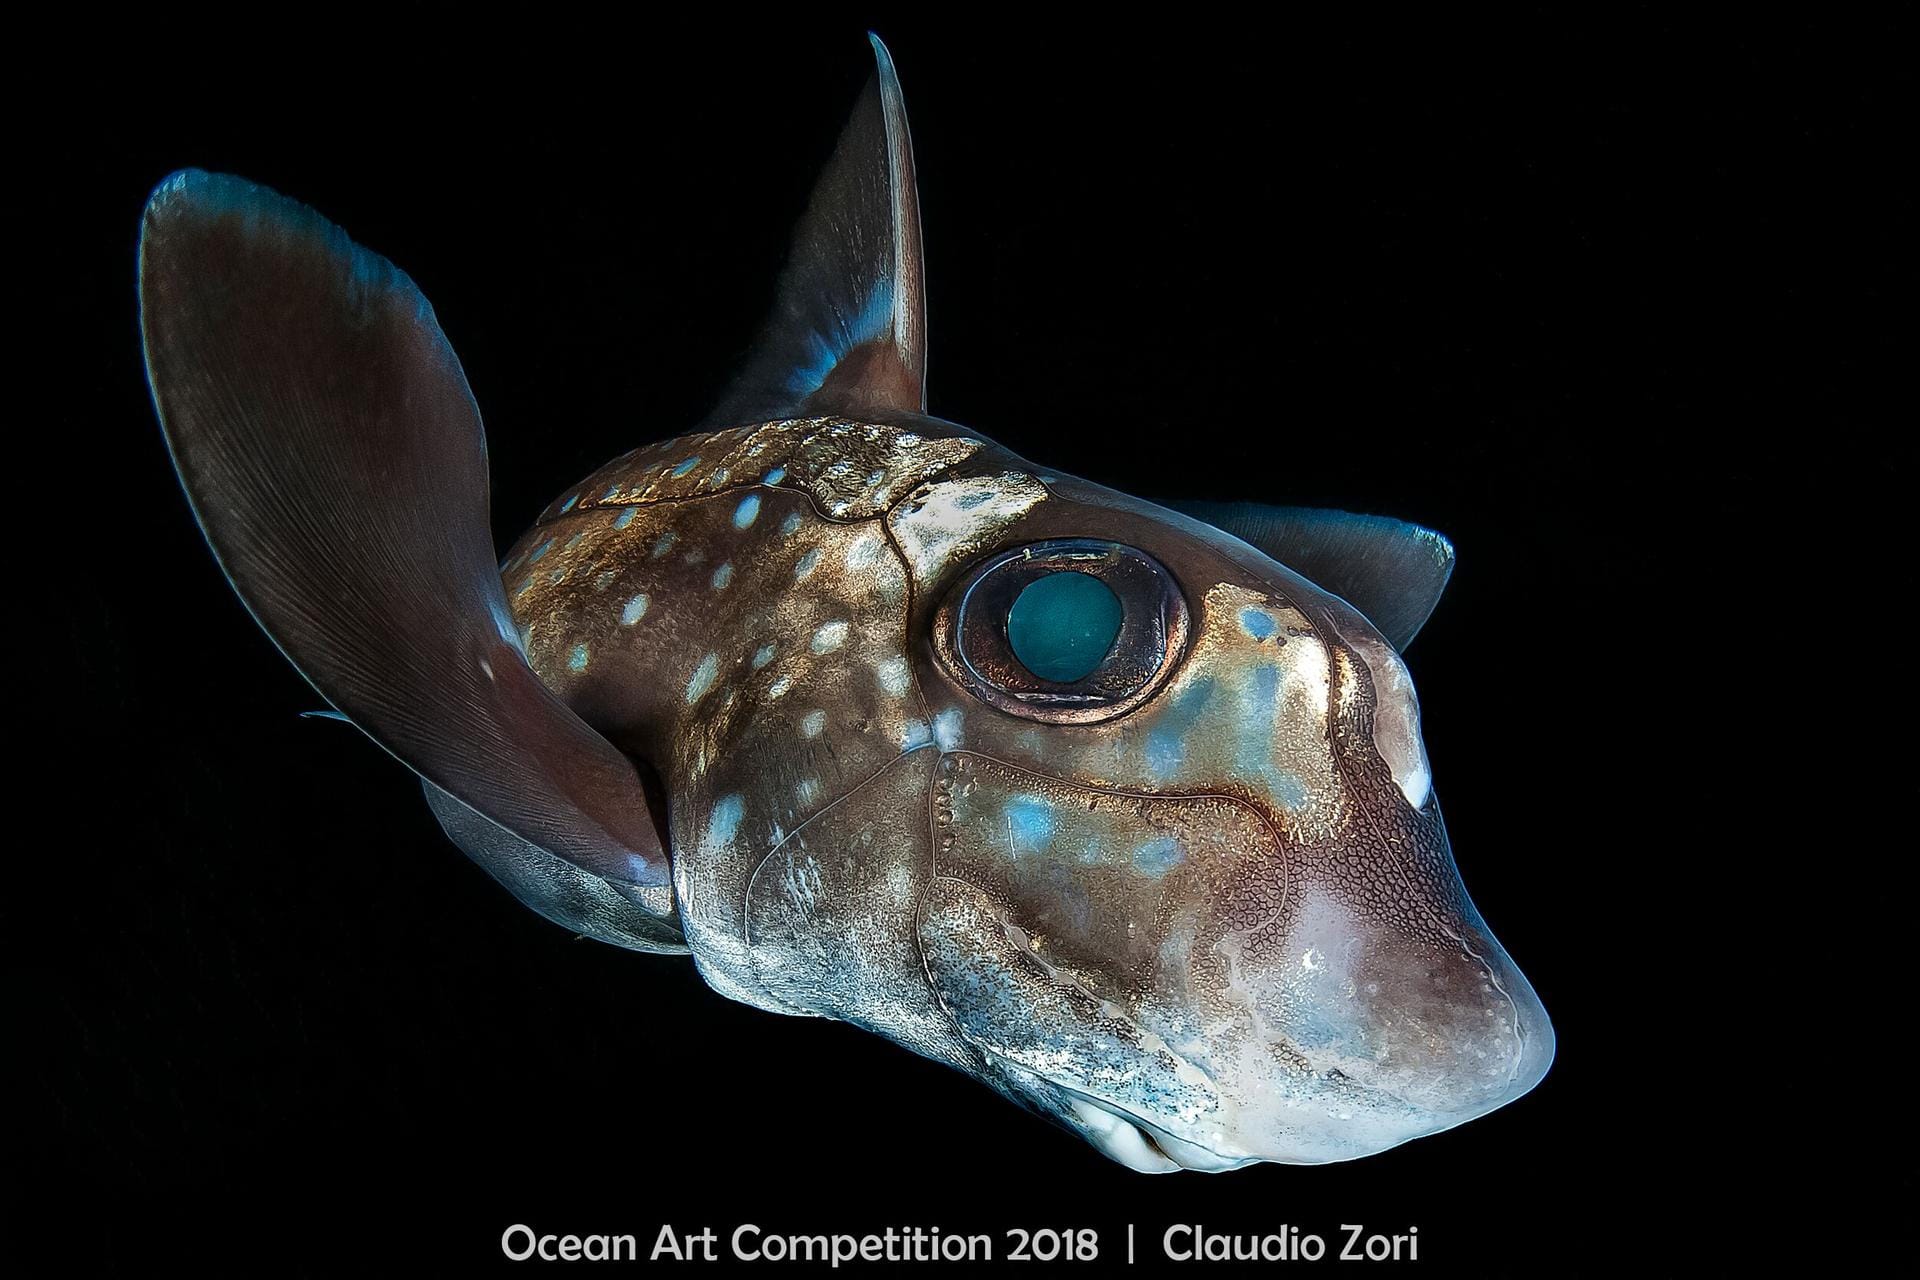 Der Gewinner in der Kategorie "Portrait": Auf dem Foto ist eine sogenannte gefleckte Seeratte zu sehen. Die Fische mit dem ungewöhnlichen Namen trifft man in einer Tiefe von 50 bis 400 Metern an.